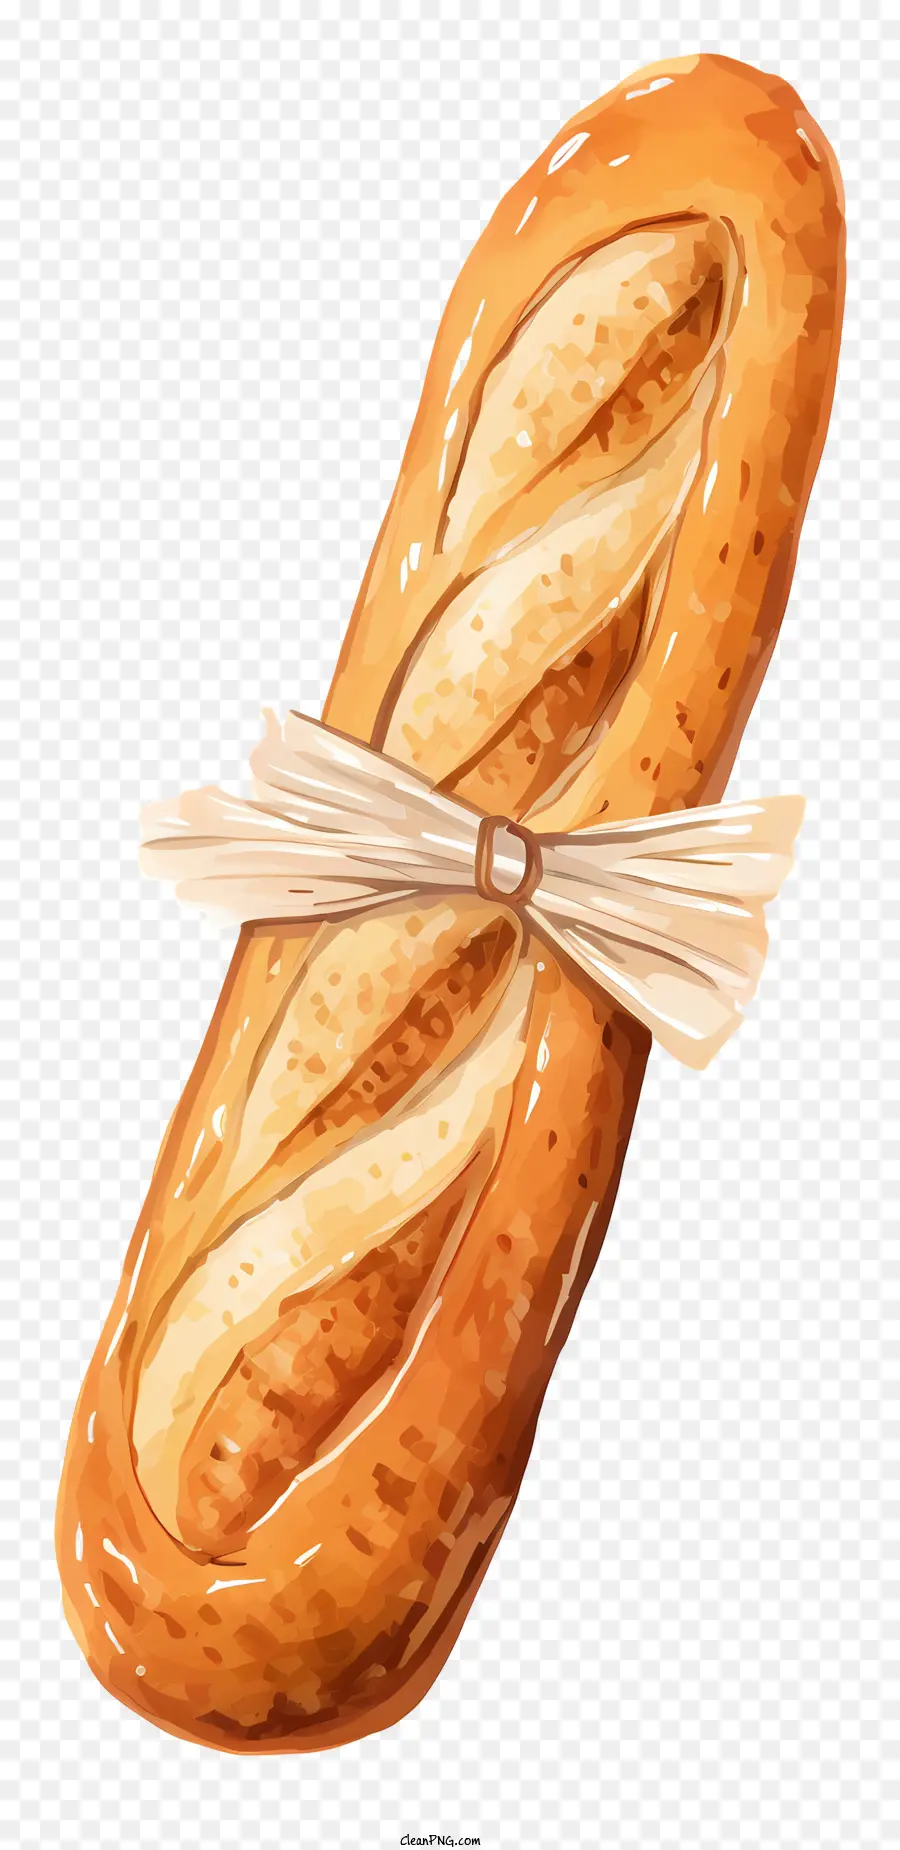 Baguette pane di grano farina croccante morbida - Baguette con nastro; 
pane cotto, croccante e soffice